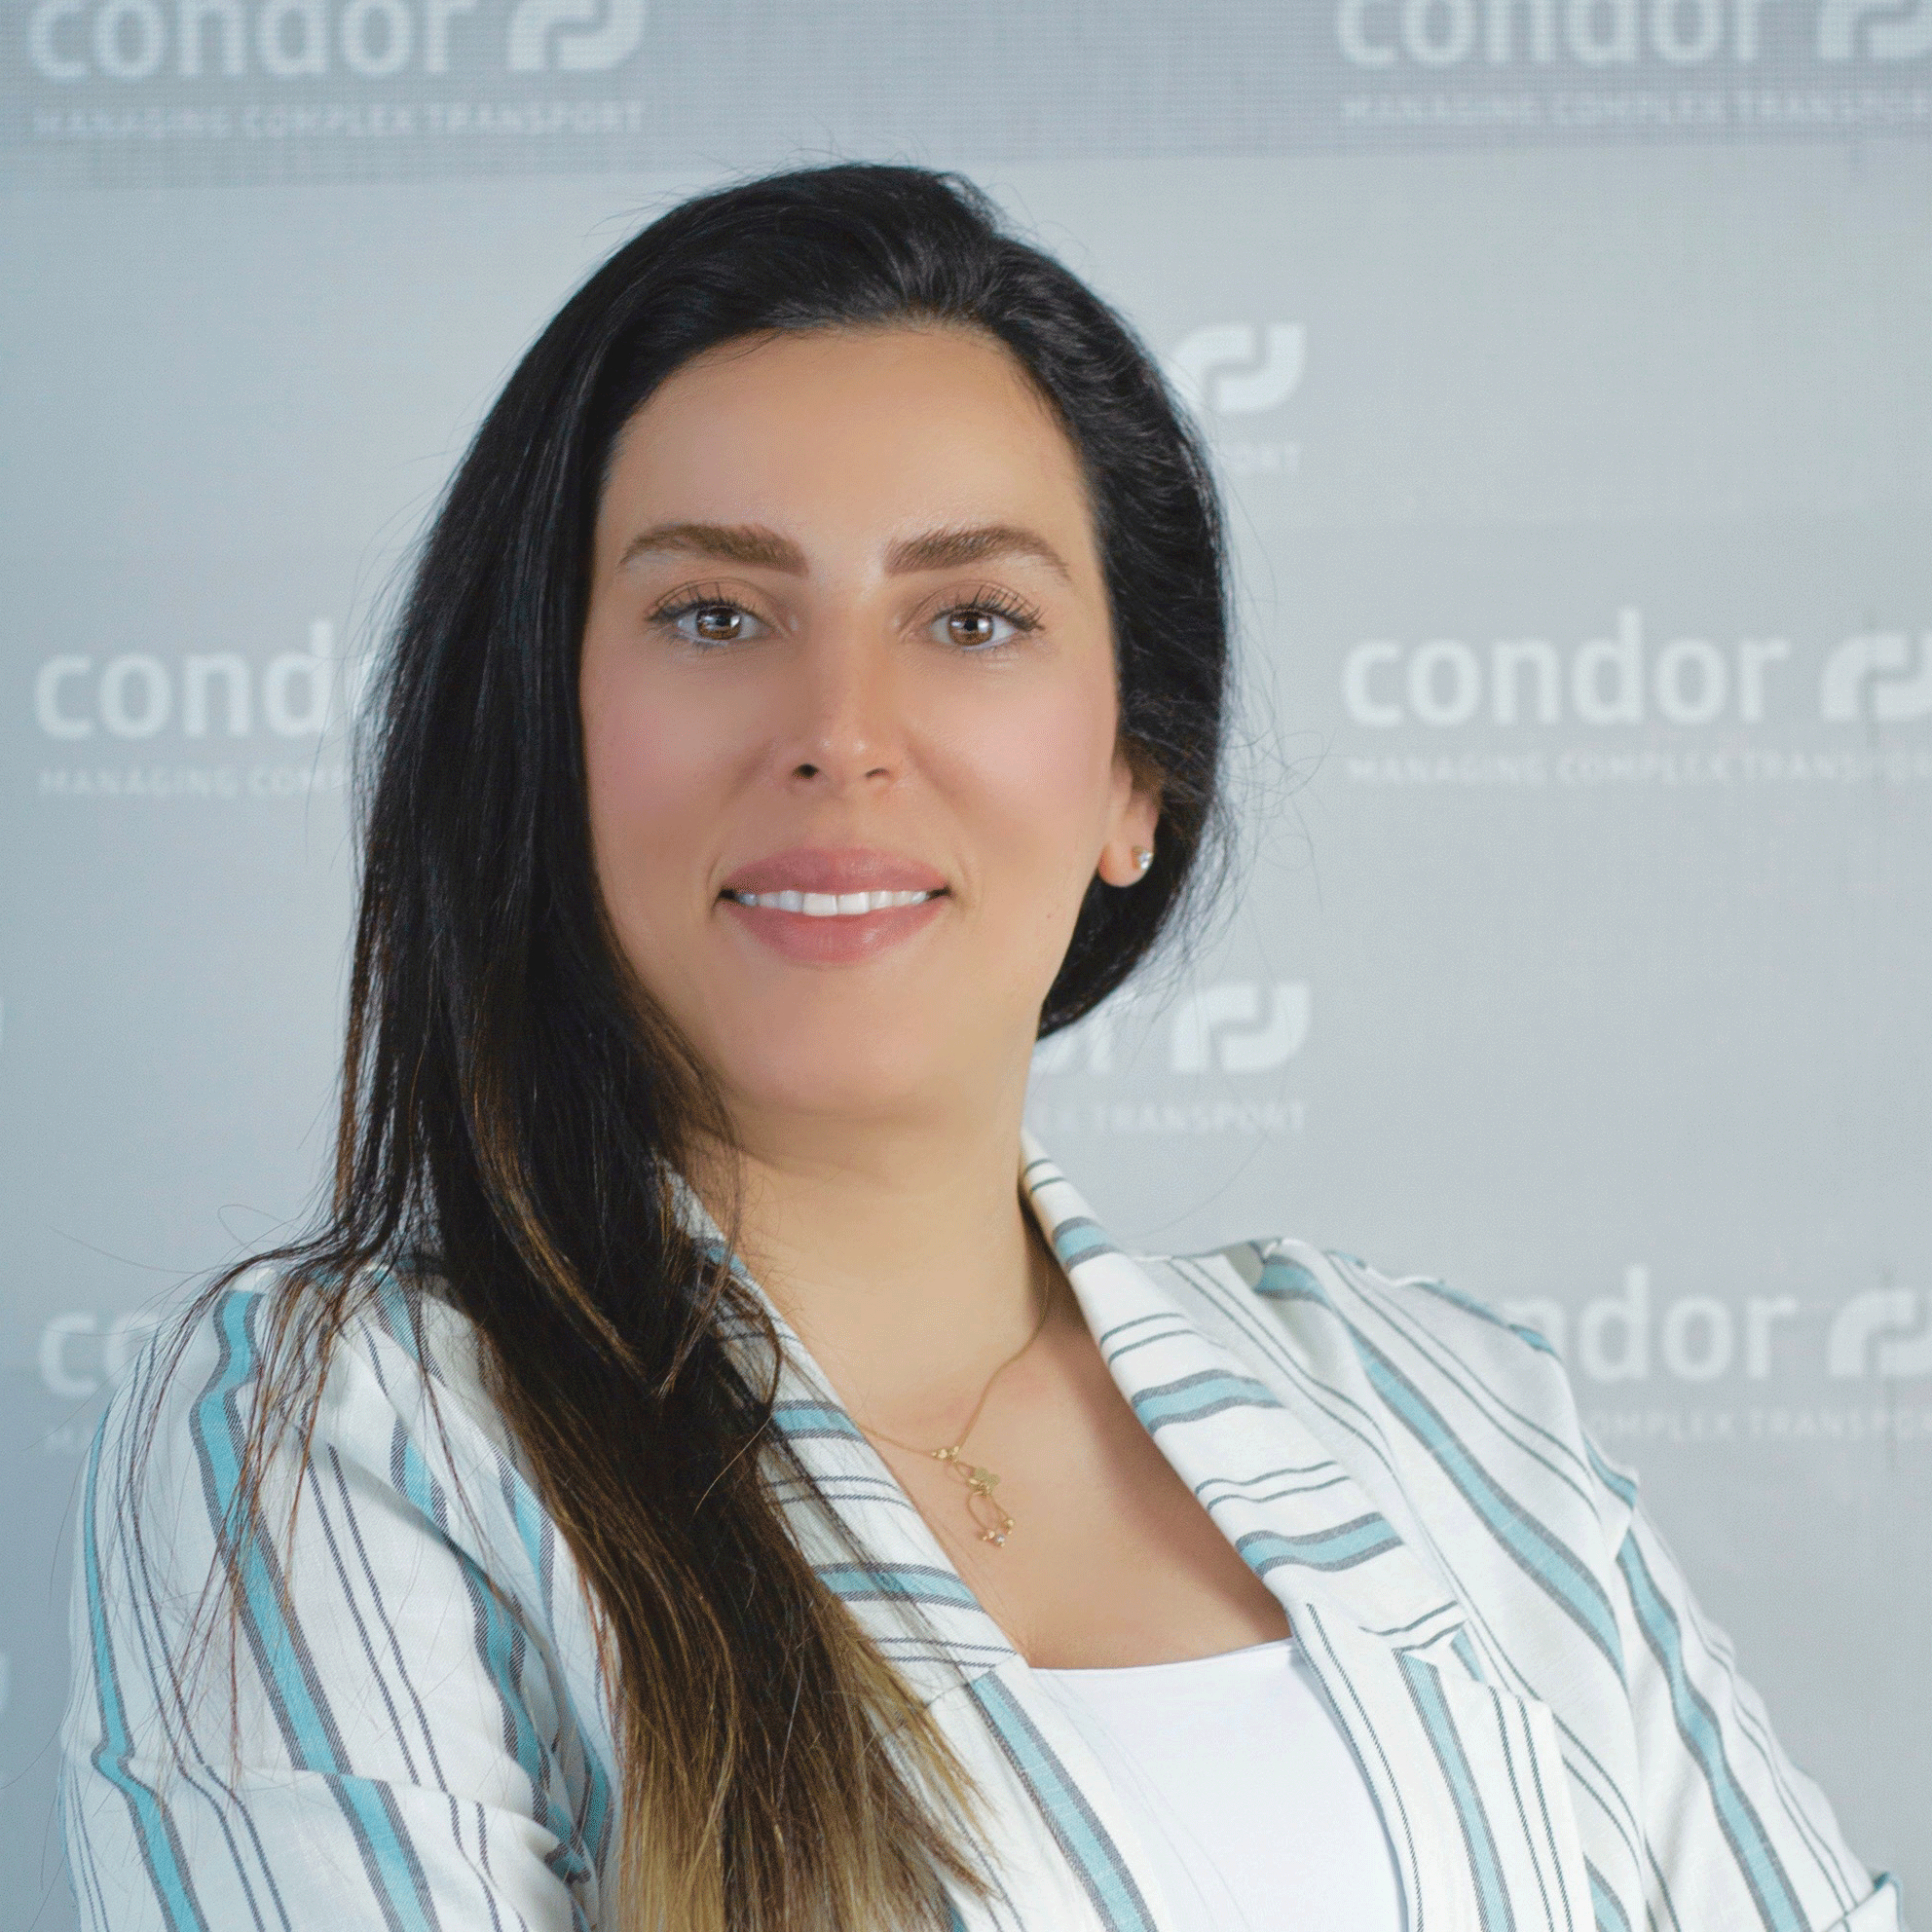 Contact - Condor